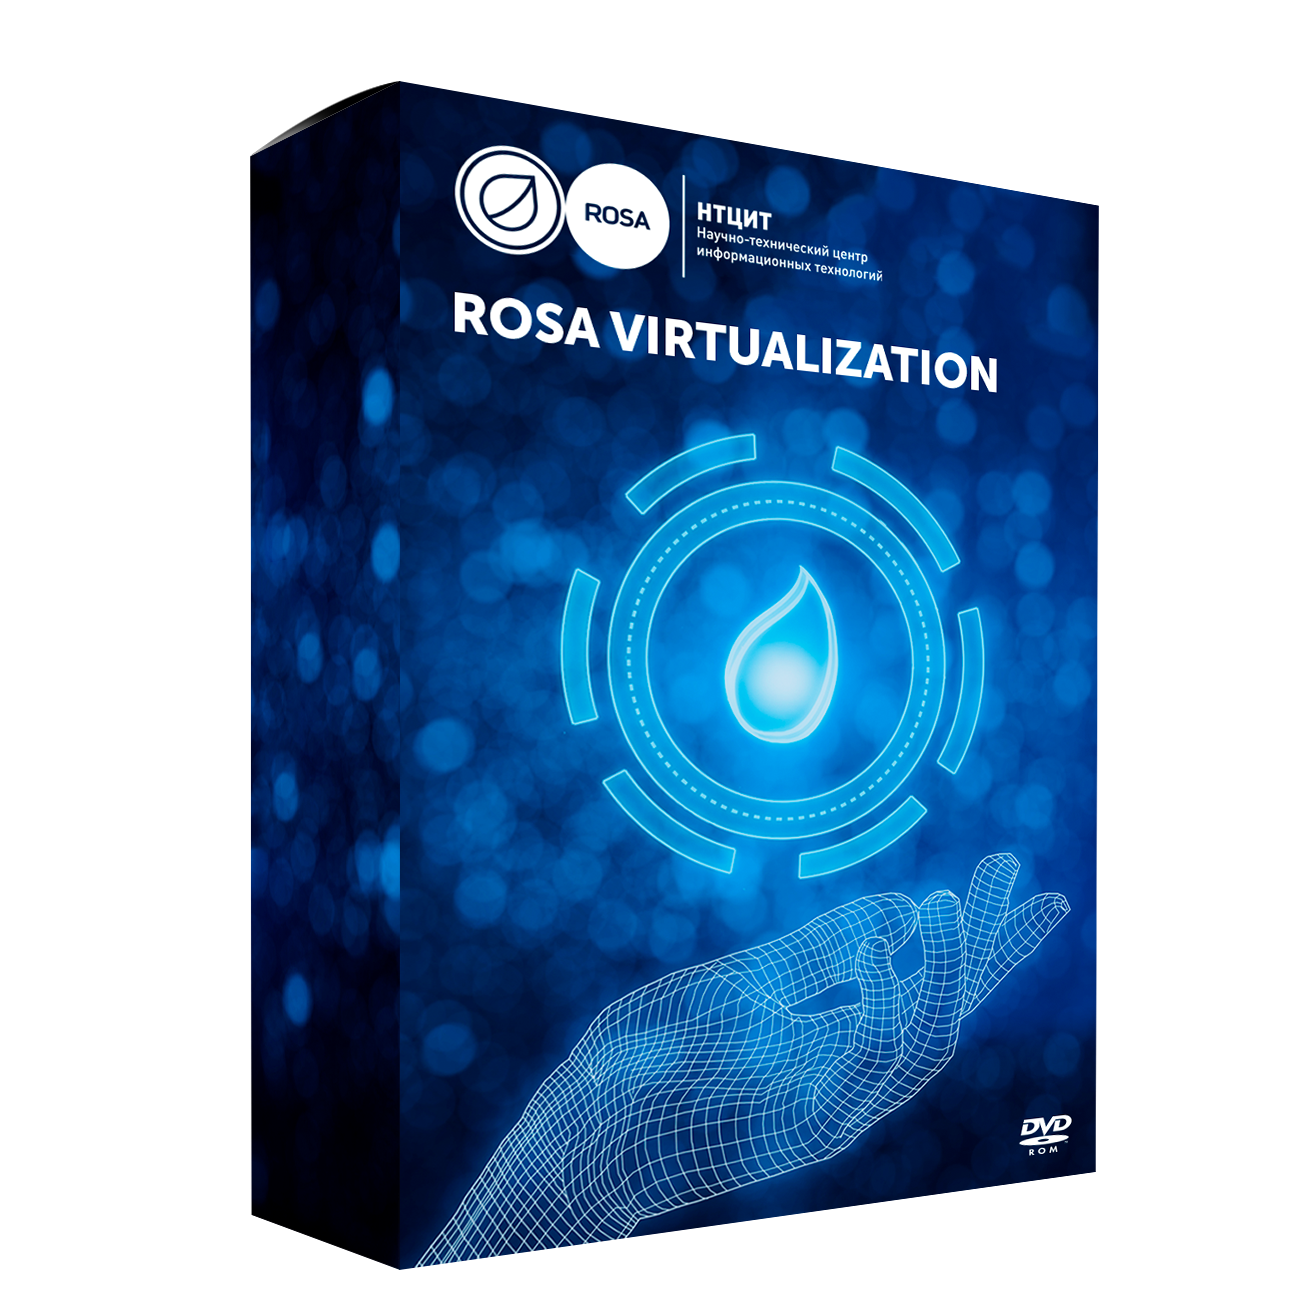 Сертификат продления стандартной технической поддержки для системы виртуализации ROSA Virtualization (1000VM), сроком 1 год